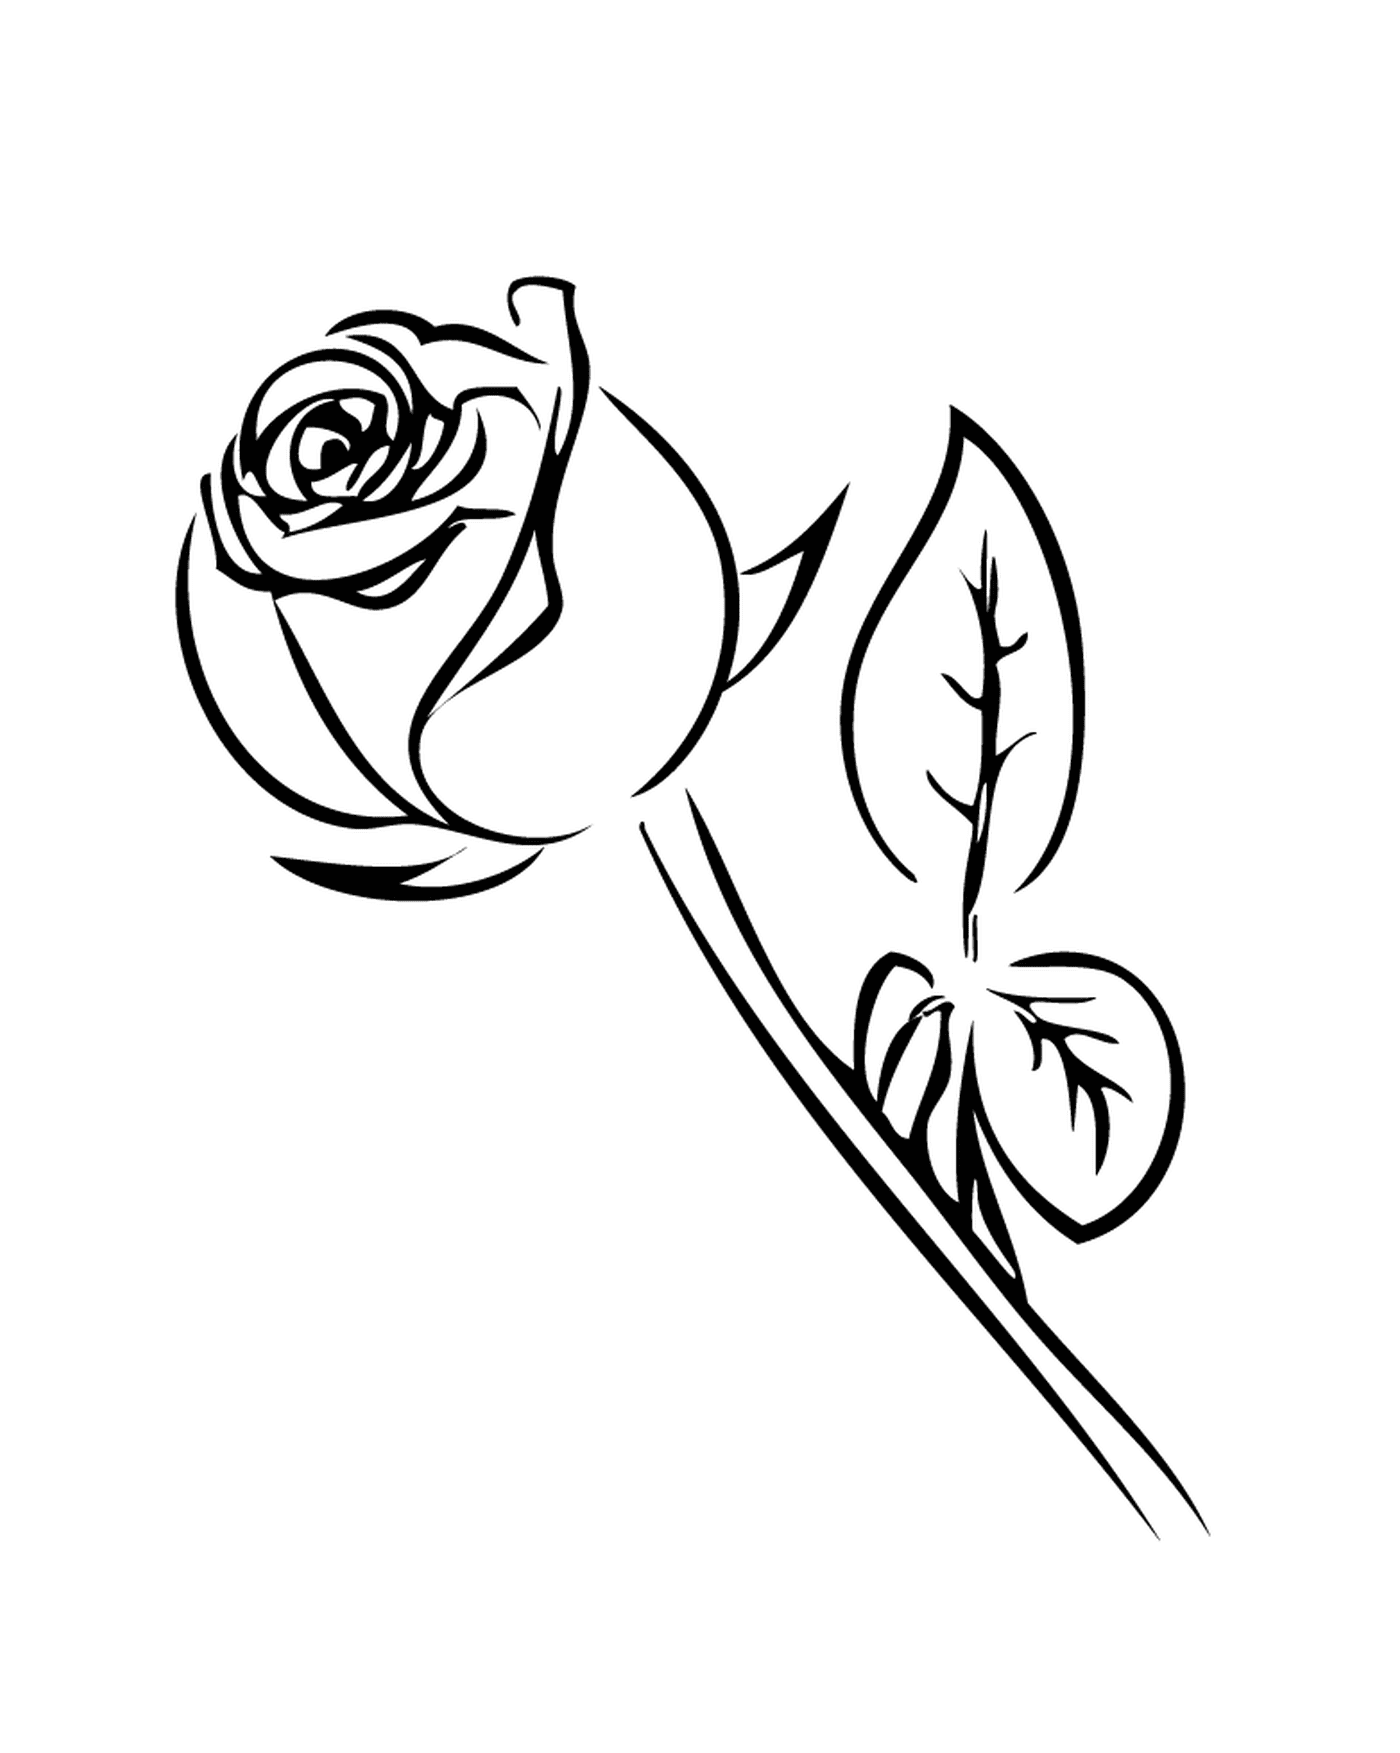  Rosa en blanco y negro 